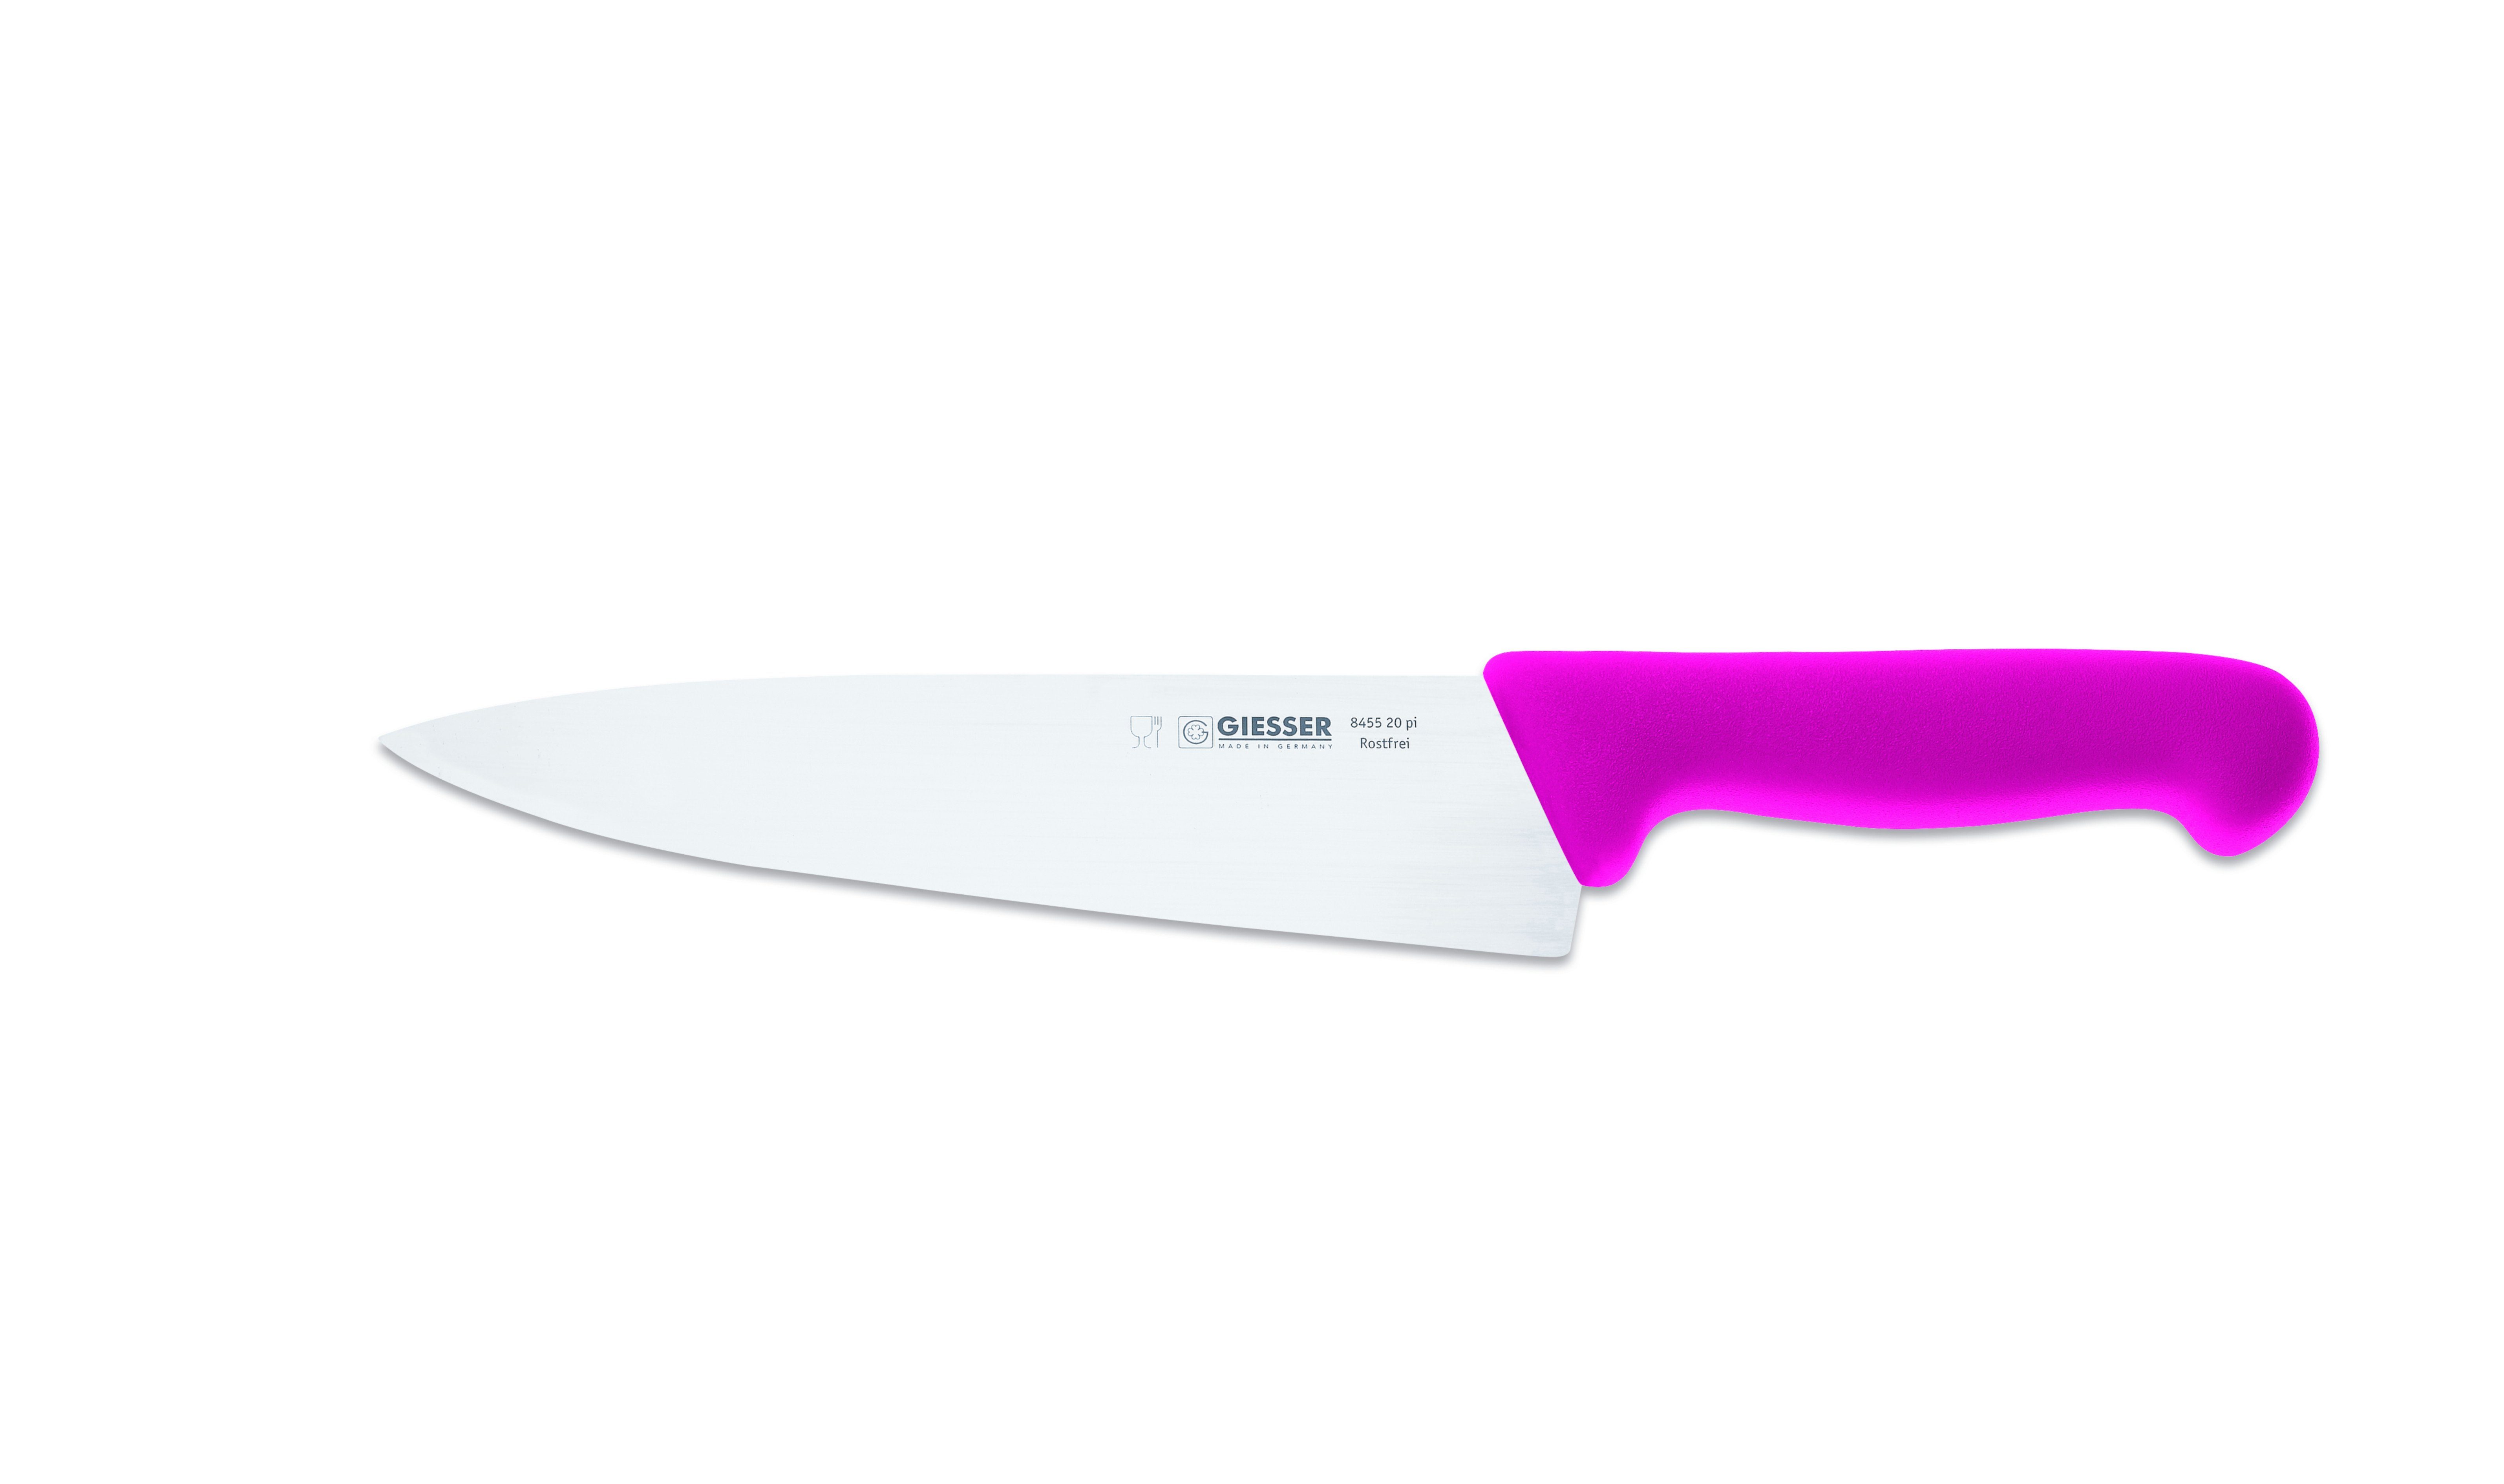 Giesser Messer Kochmesser Küchenmesser breit 8455, Rostfrei, breite Form, scharf, Handabzug, Ideal für jede Küche pink | Kochmesser